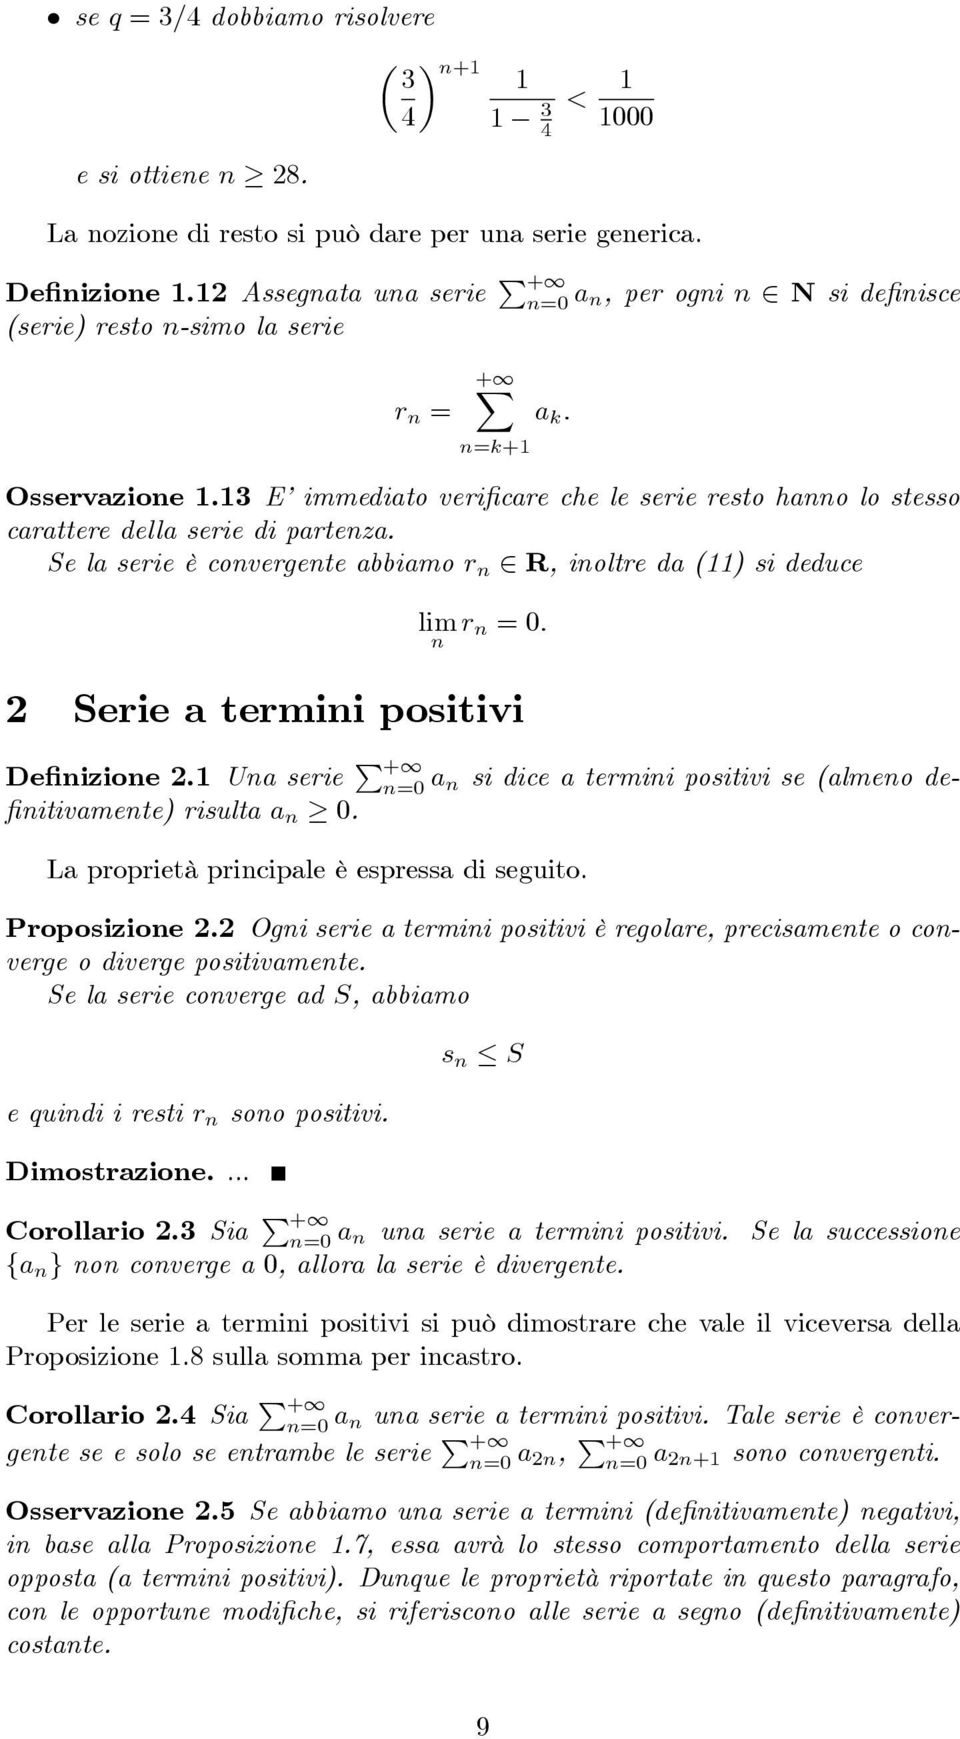 Se la serie è covergete abbiamo r 2 R, ioltre da () si deduce r = 0: 2 Serie a termii positivi De izioe 2. Ua serie P + =0 a si dice a termii positivi se (almeo de- itivamete) risulta a 0.